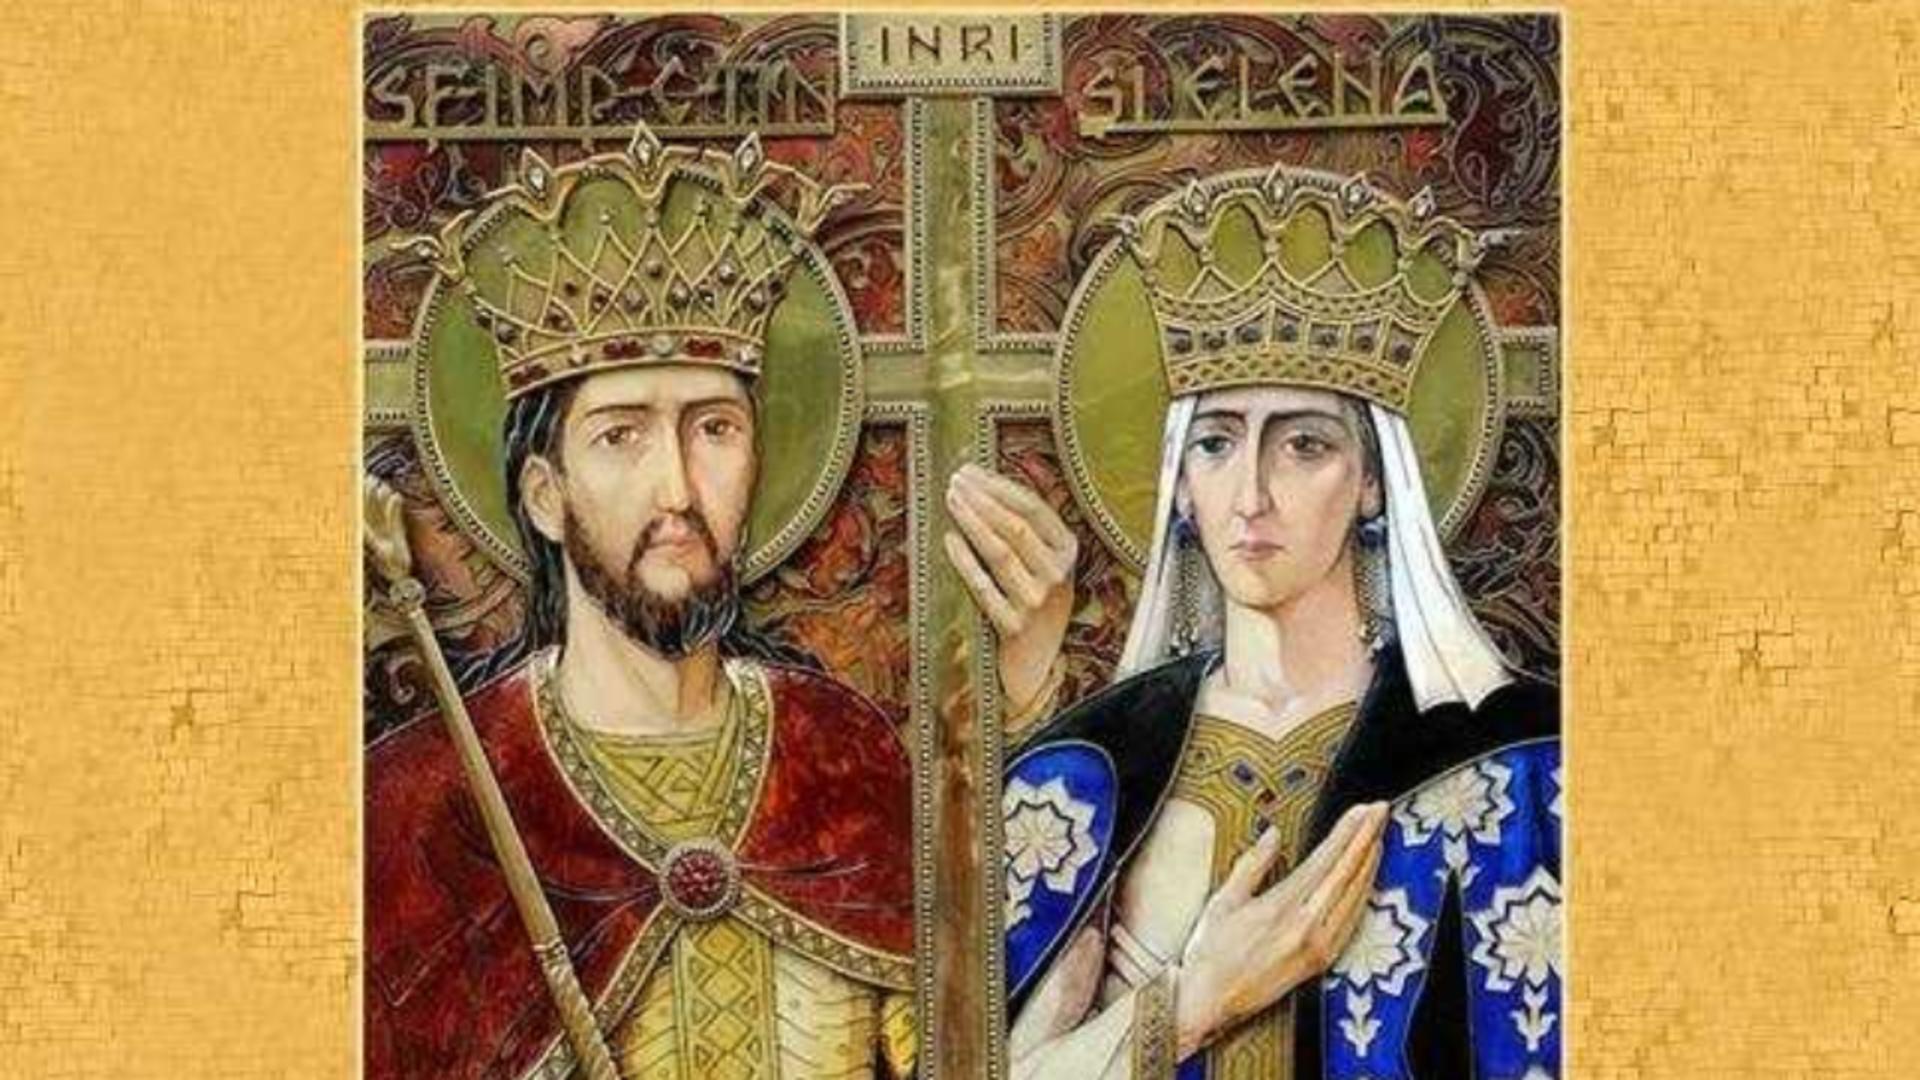 Sărbătoare 21 mai - Este marcată cu cruce roșie în calendarul ortodox: Sfinții Constantin și Elena